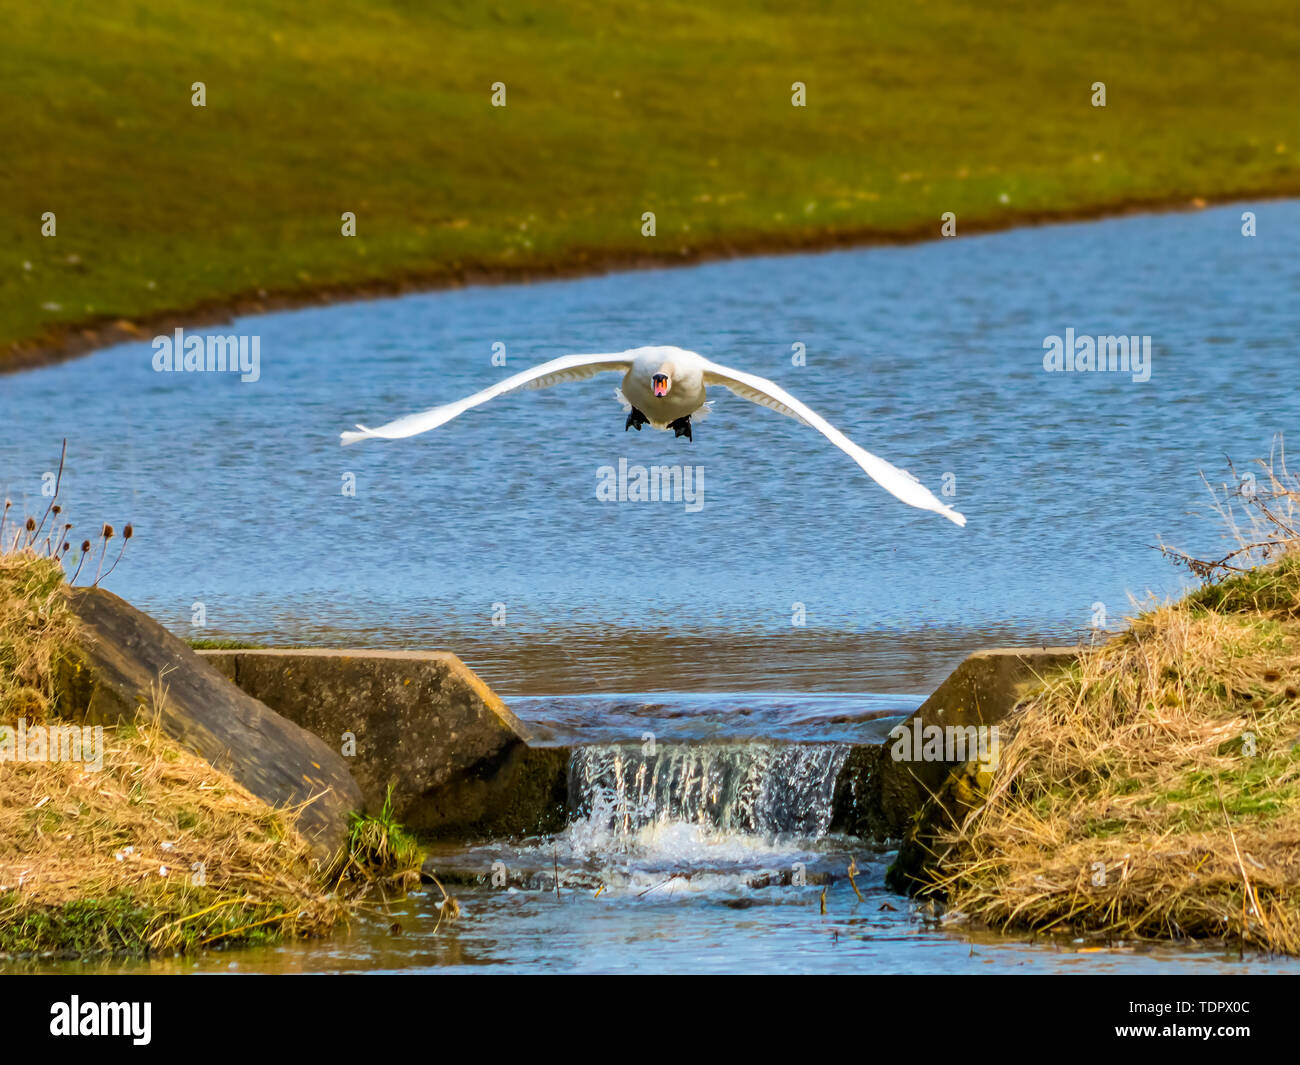 White Bird volando verso la fotocamera con la bocca aperta; Penshaw, Tyne and Wear, Inghilterra Foto Stock